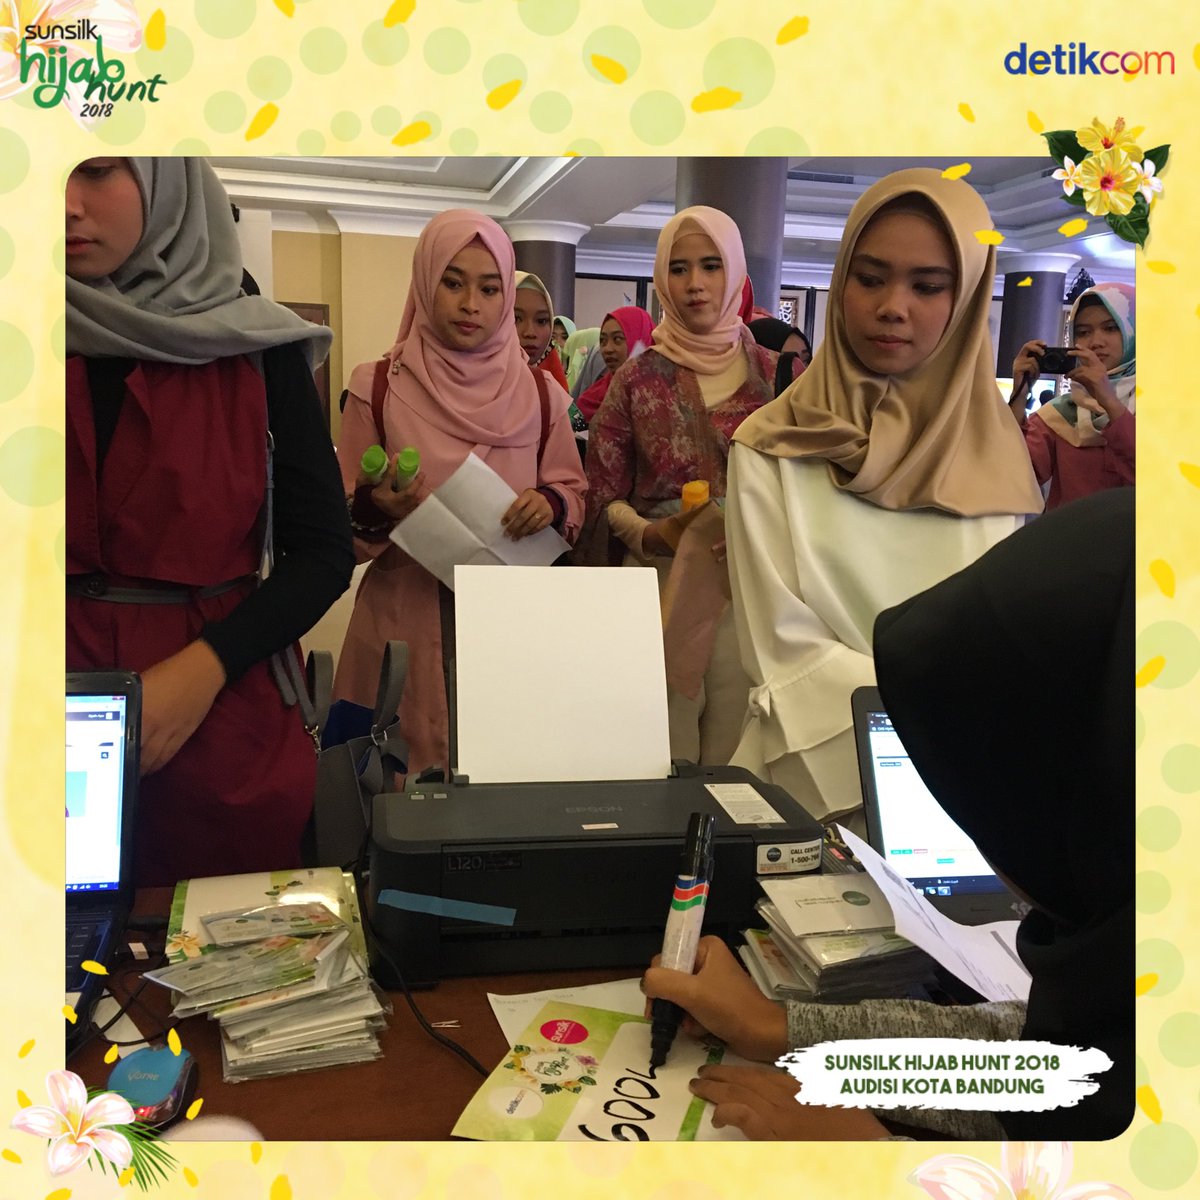 Inilah Dua Finalis Sunsilk Hijab Hunt 2018 Dari Bandung Diary Pink